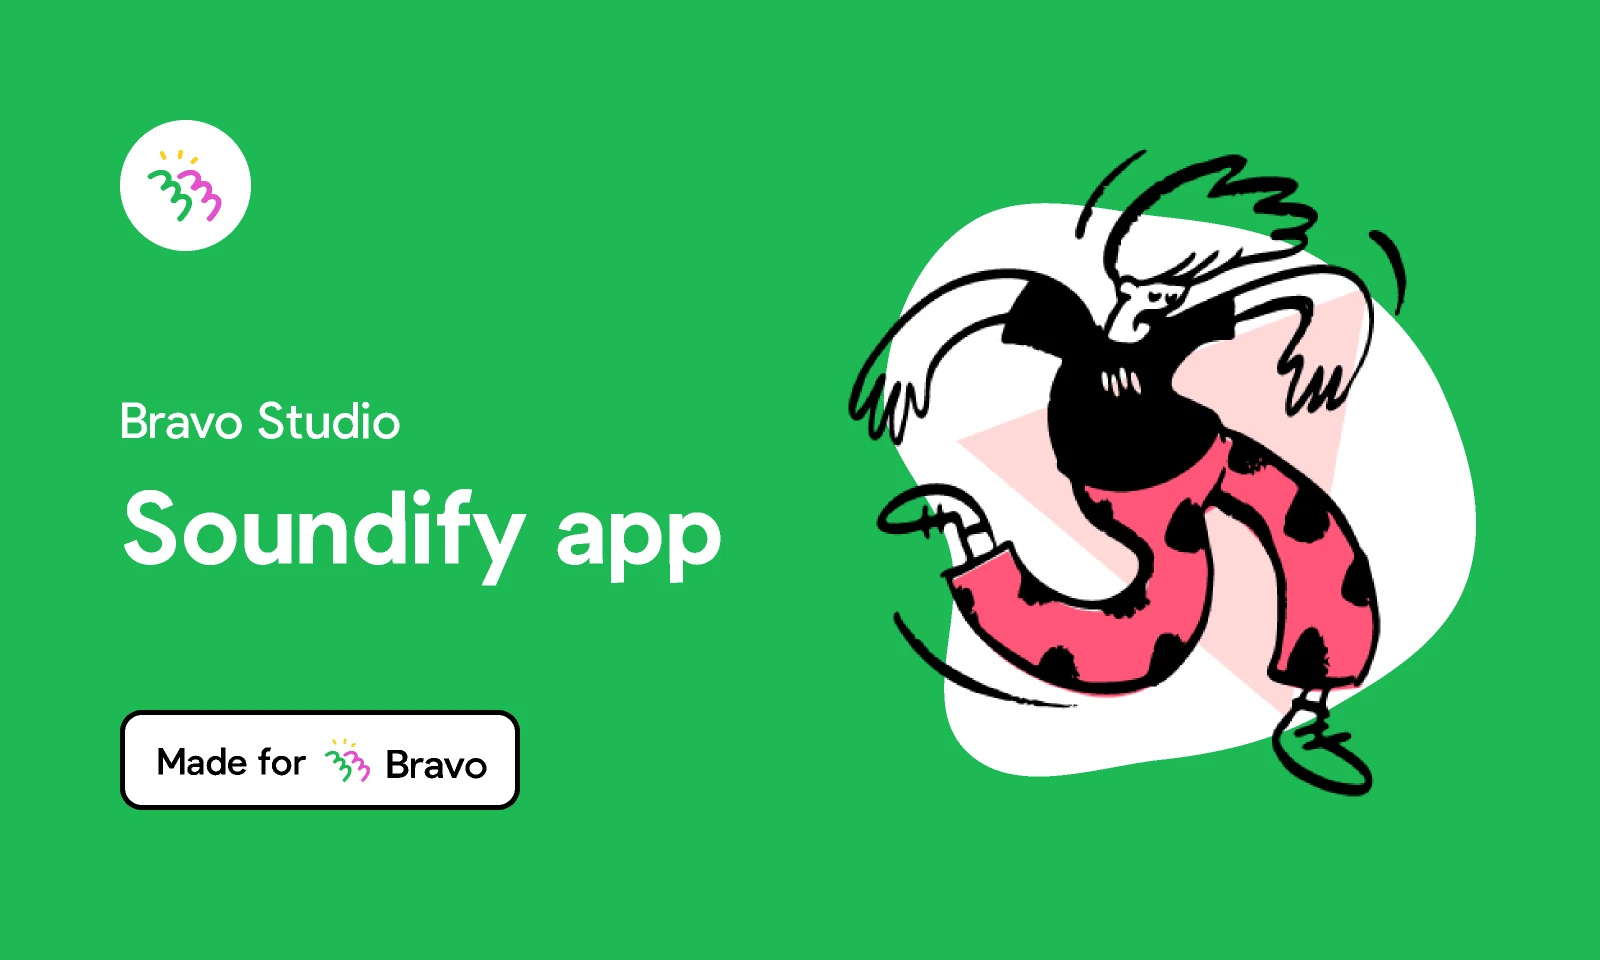 Bravo Sample App: Soundify app for Figma and Adobe XD